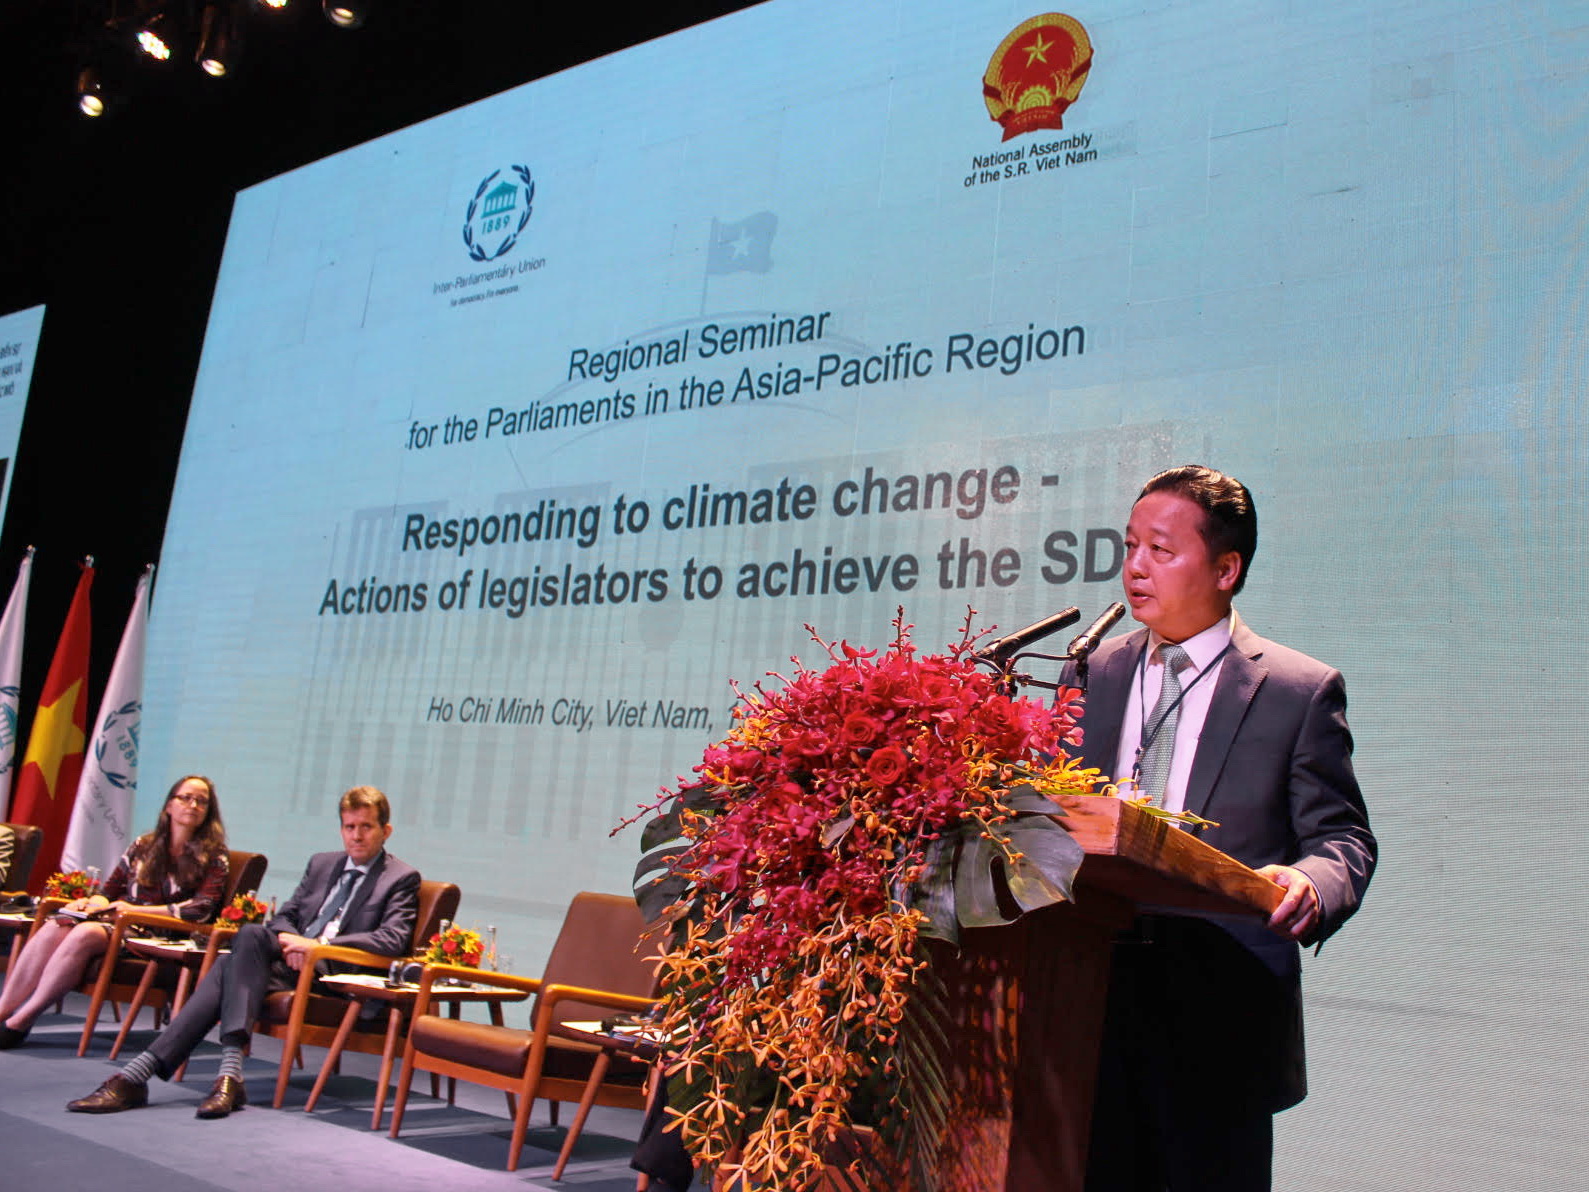 Bộ trưởng Trần Hồng Hà: Mong muốn phát triển hợp tác với tất cả các quốc gia về các lĩnh vực khác nhau nhằm ứng phó hiệu quả biến đổi khí hậu và phát triển bền vững